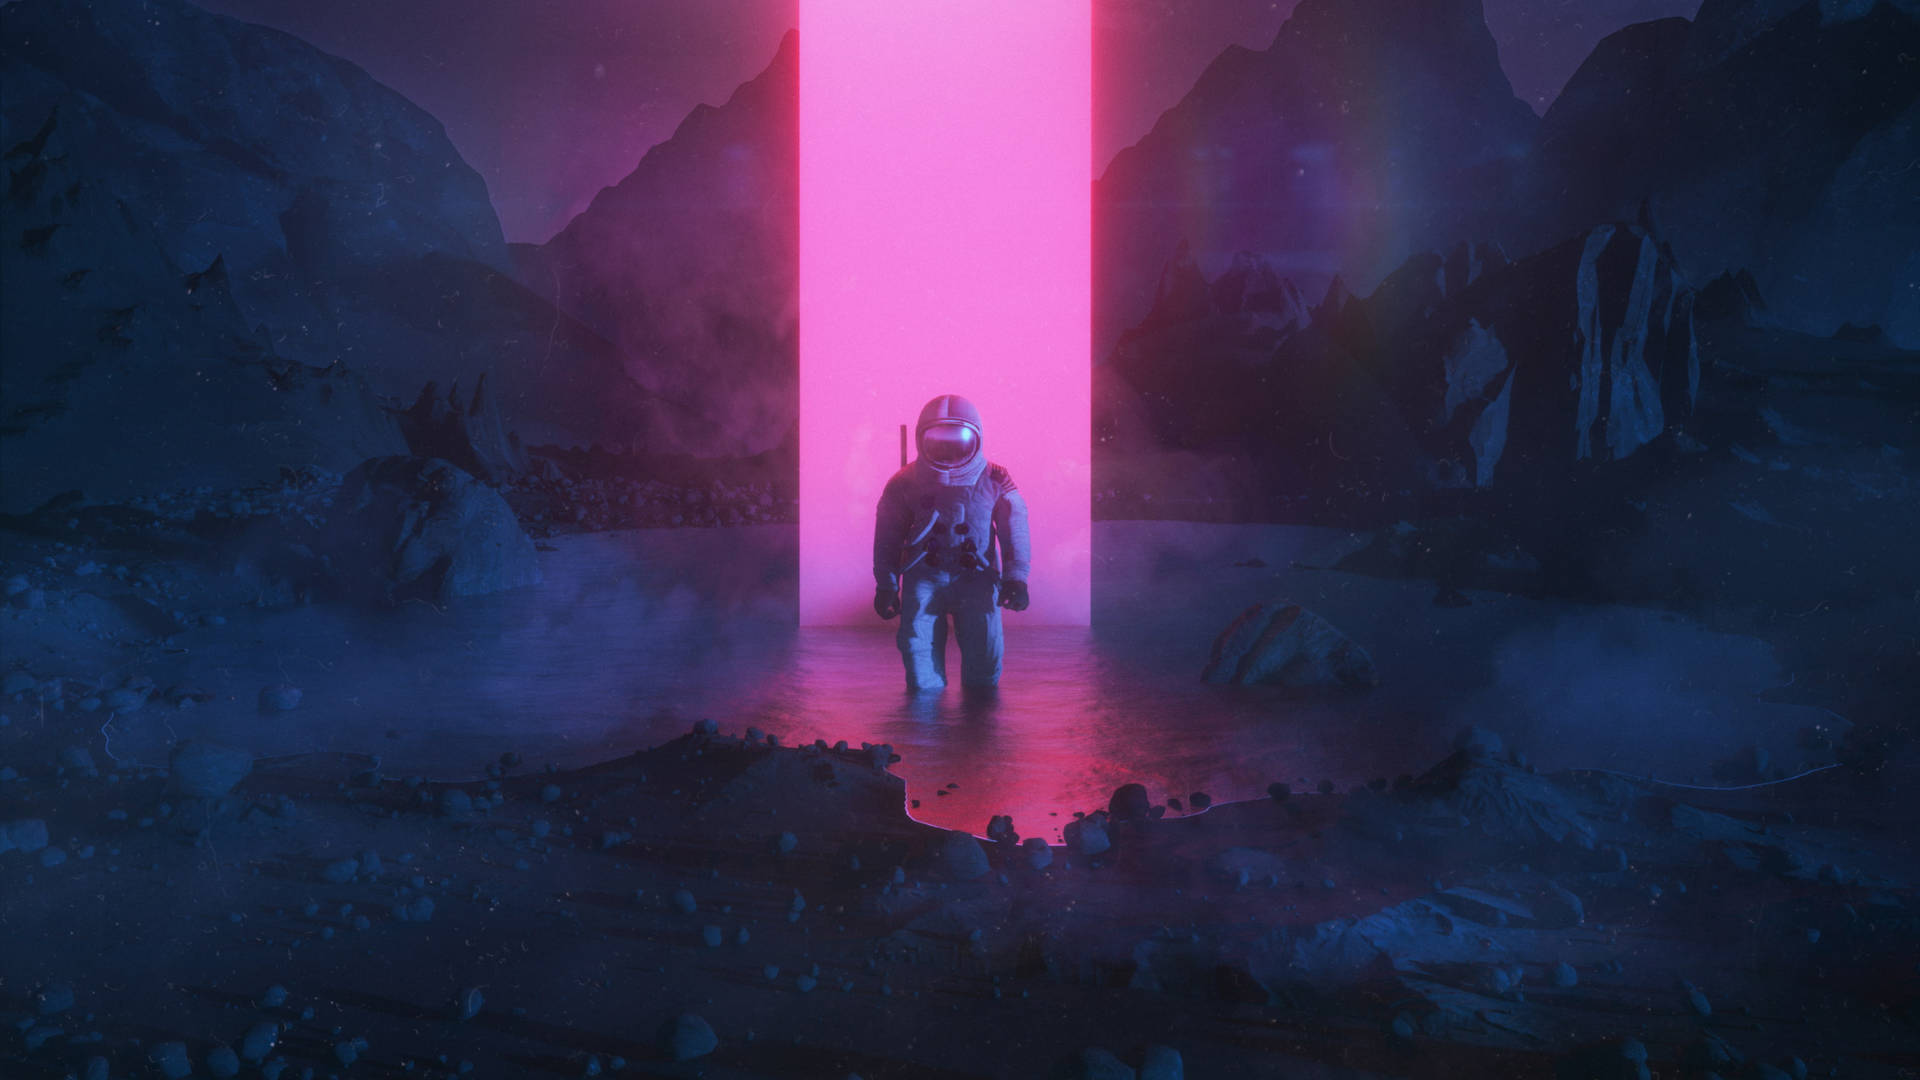 Neon Aesthetic Astronaut On Lake